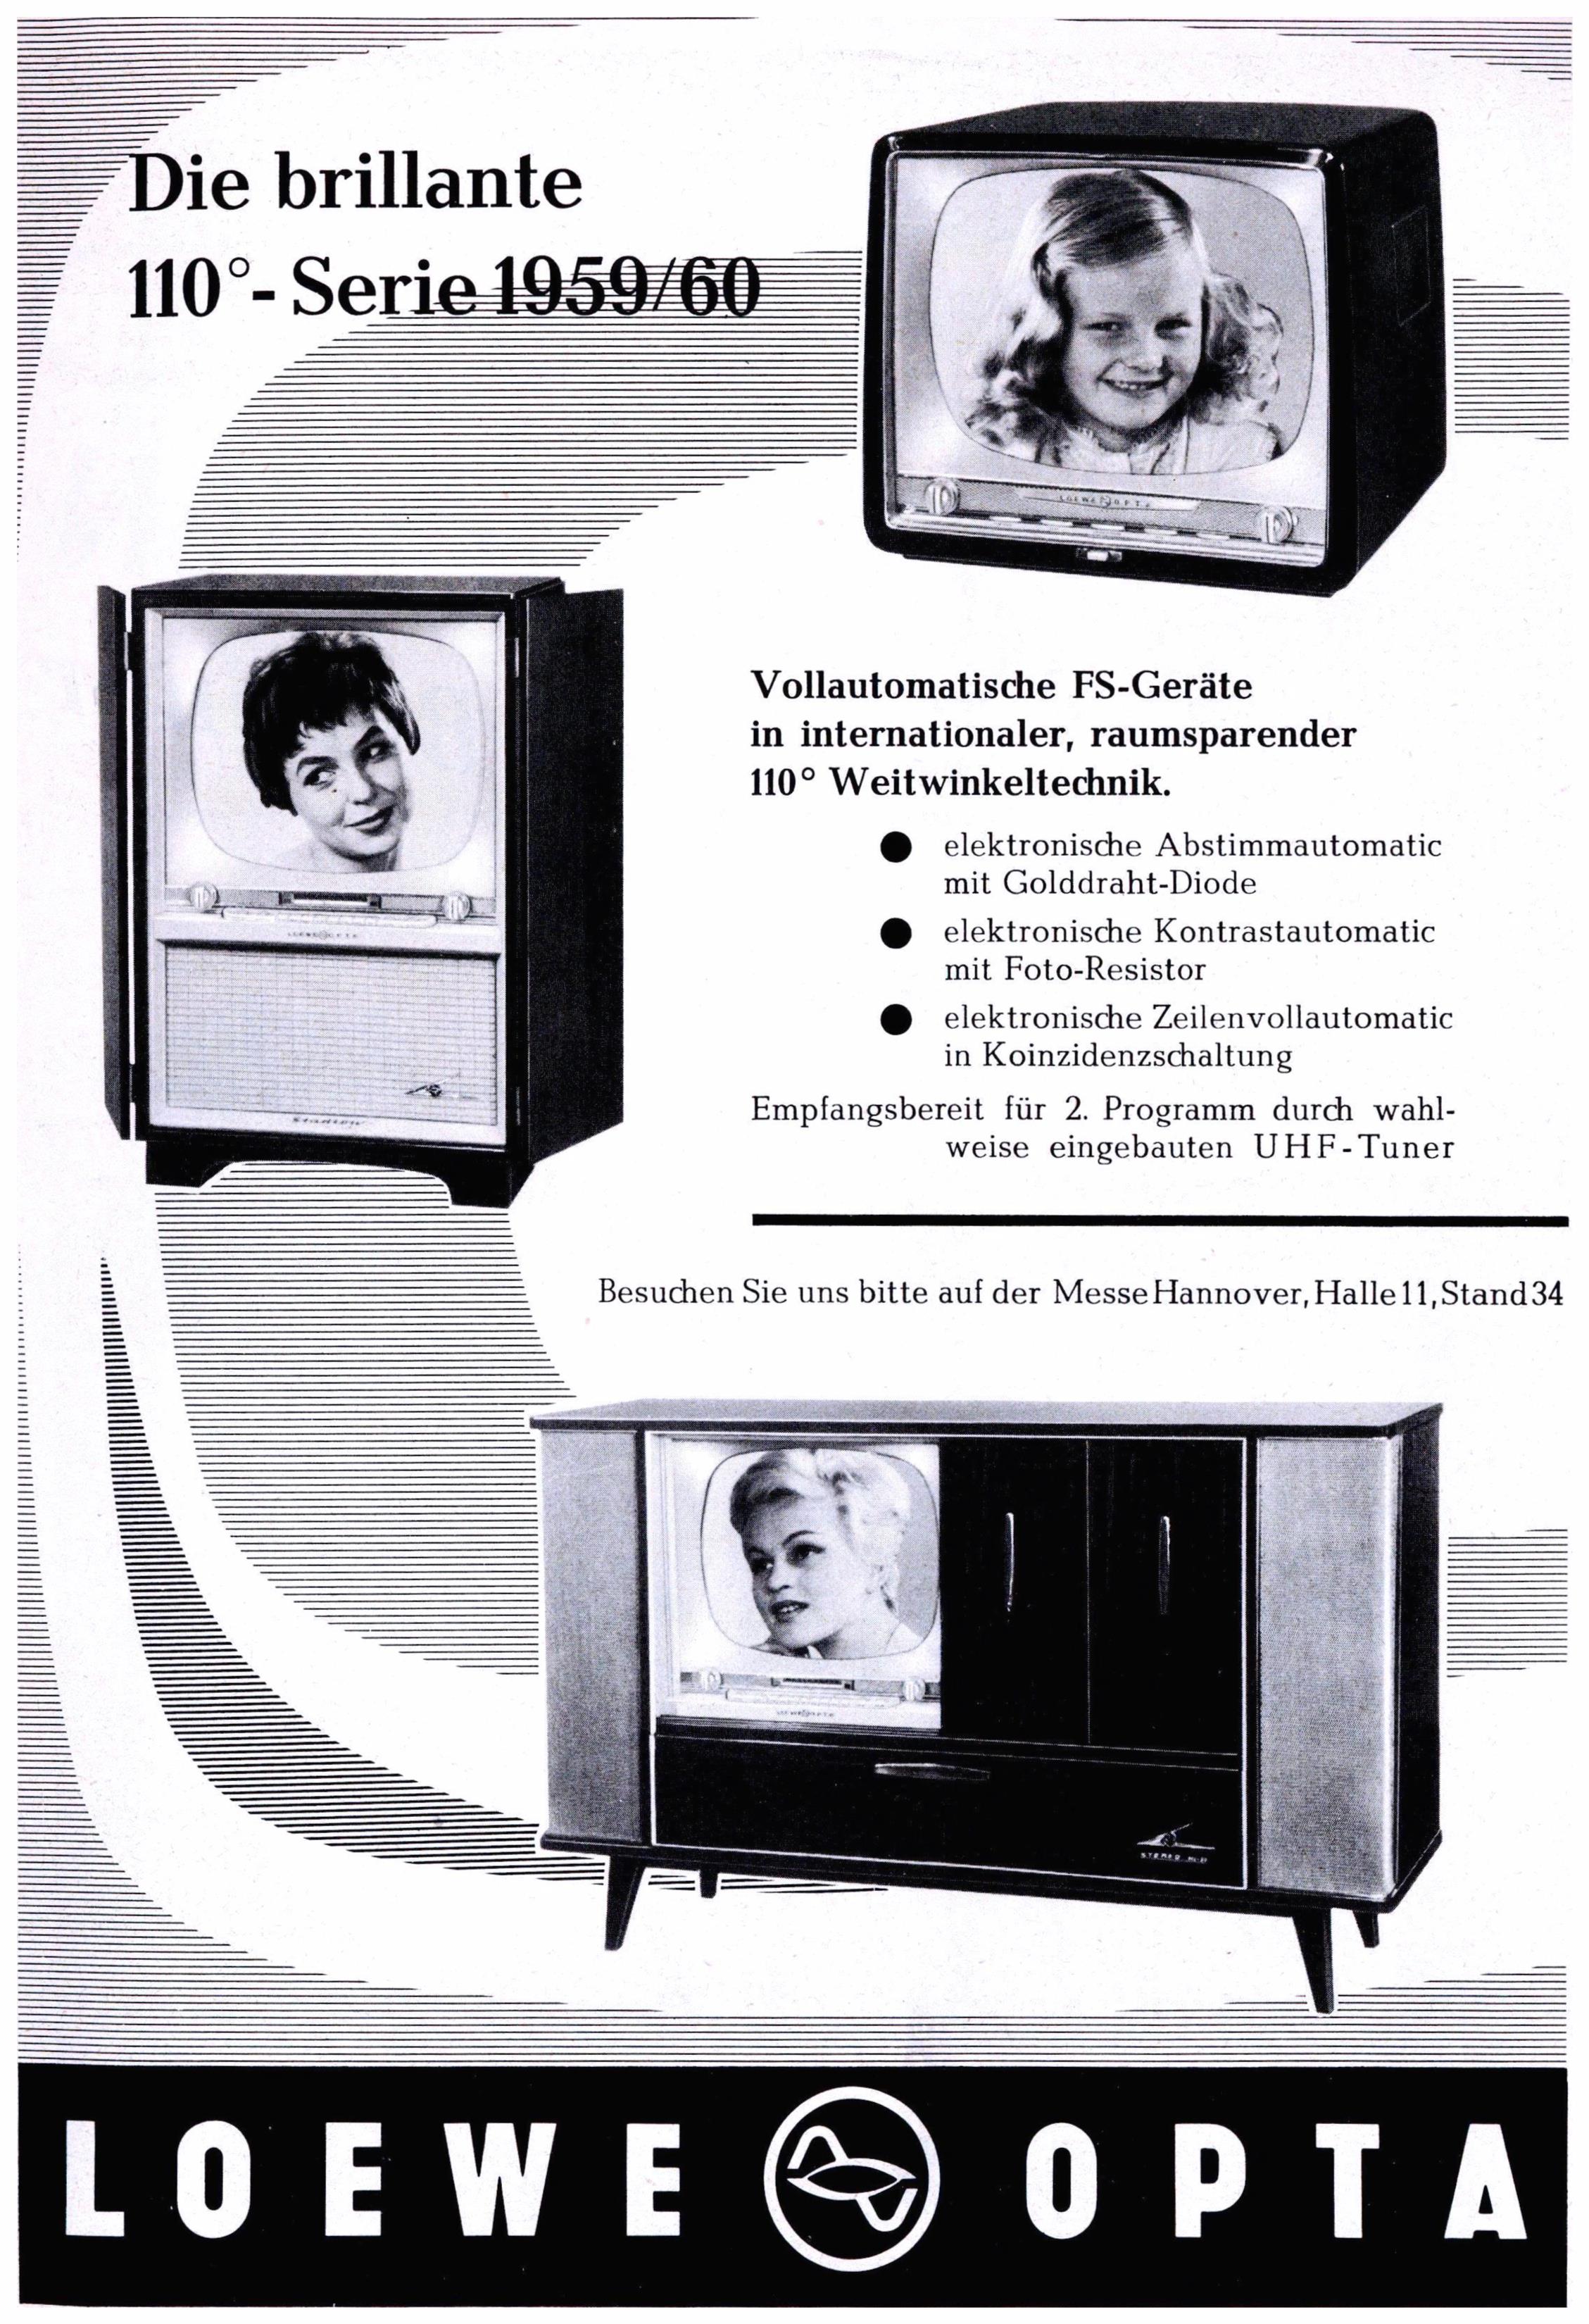 Loewe 1959 9.jpg